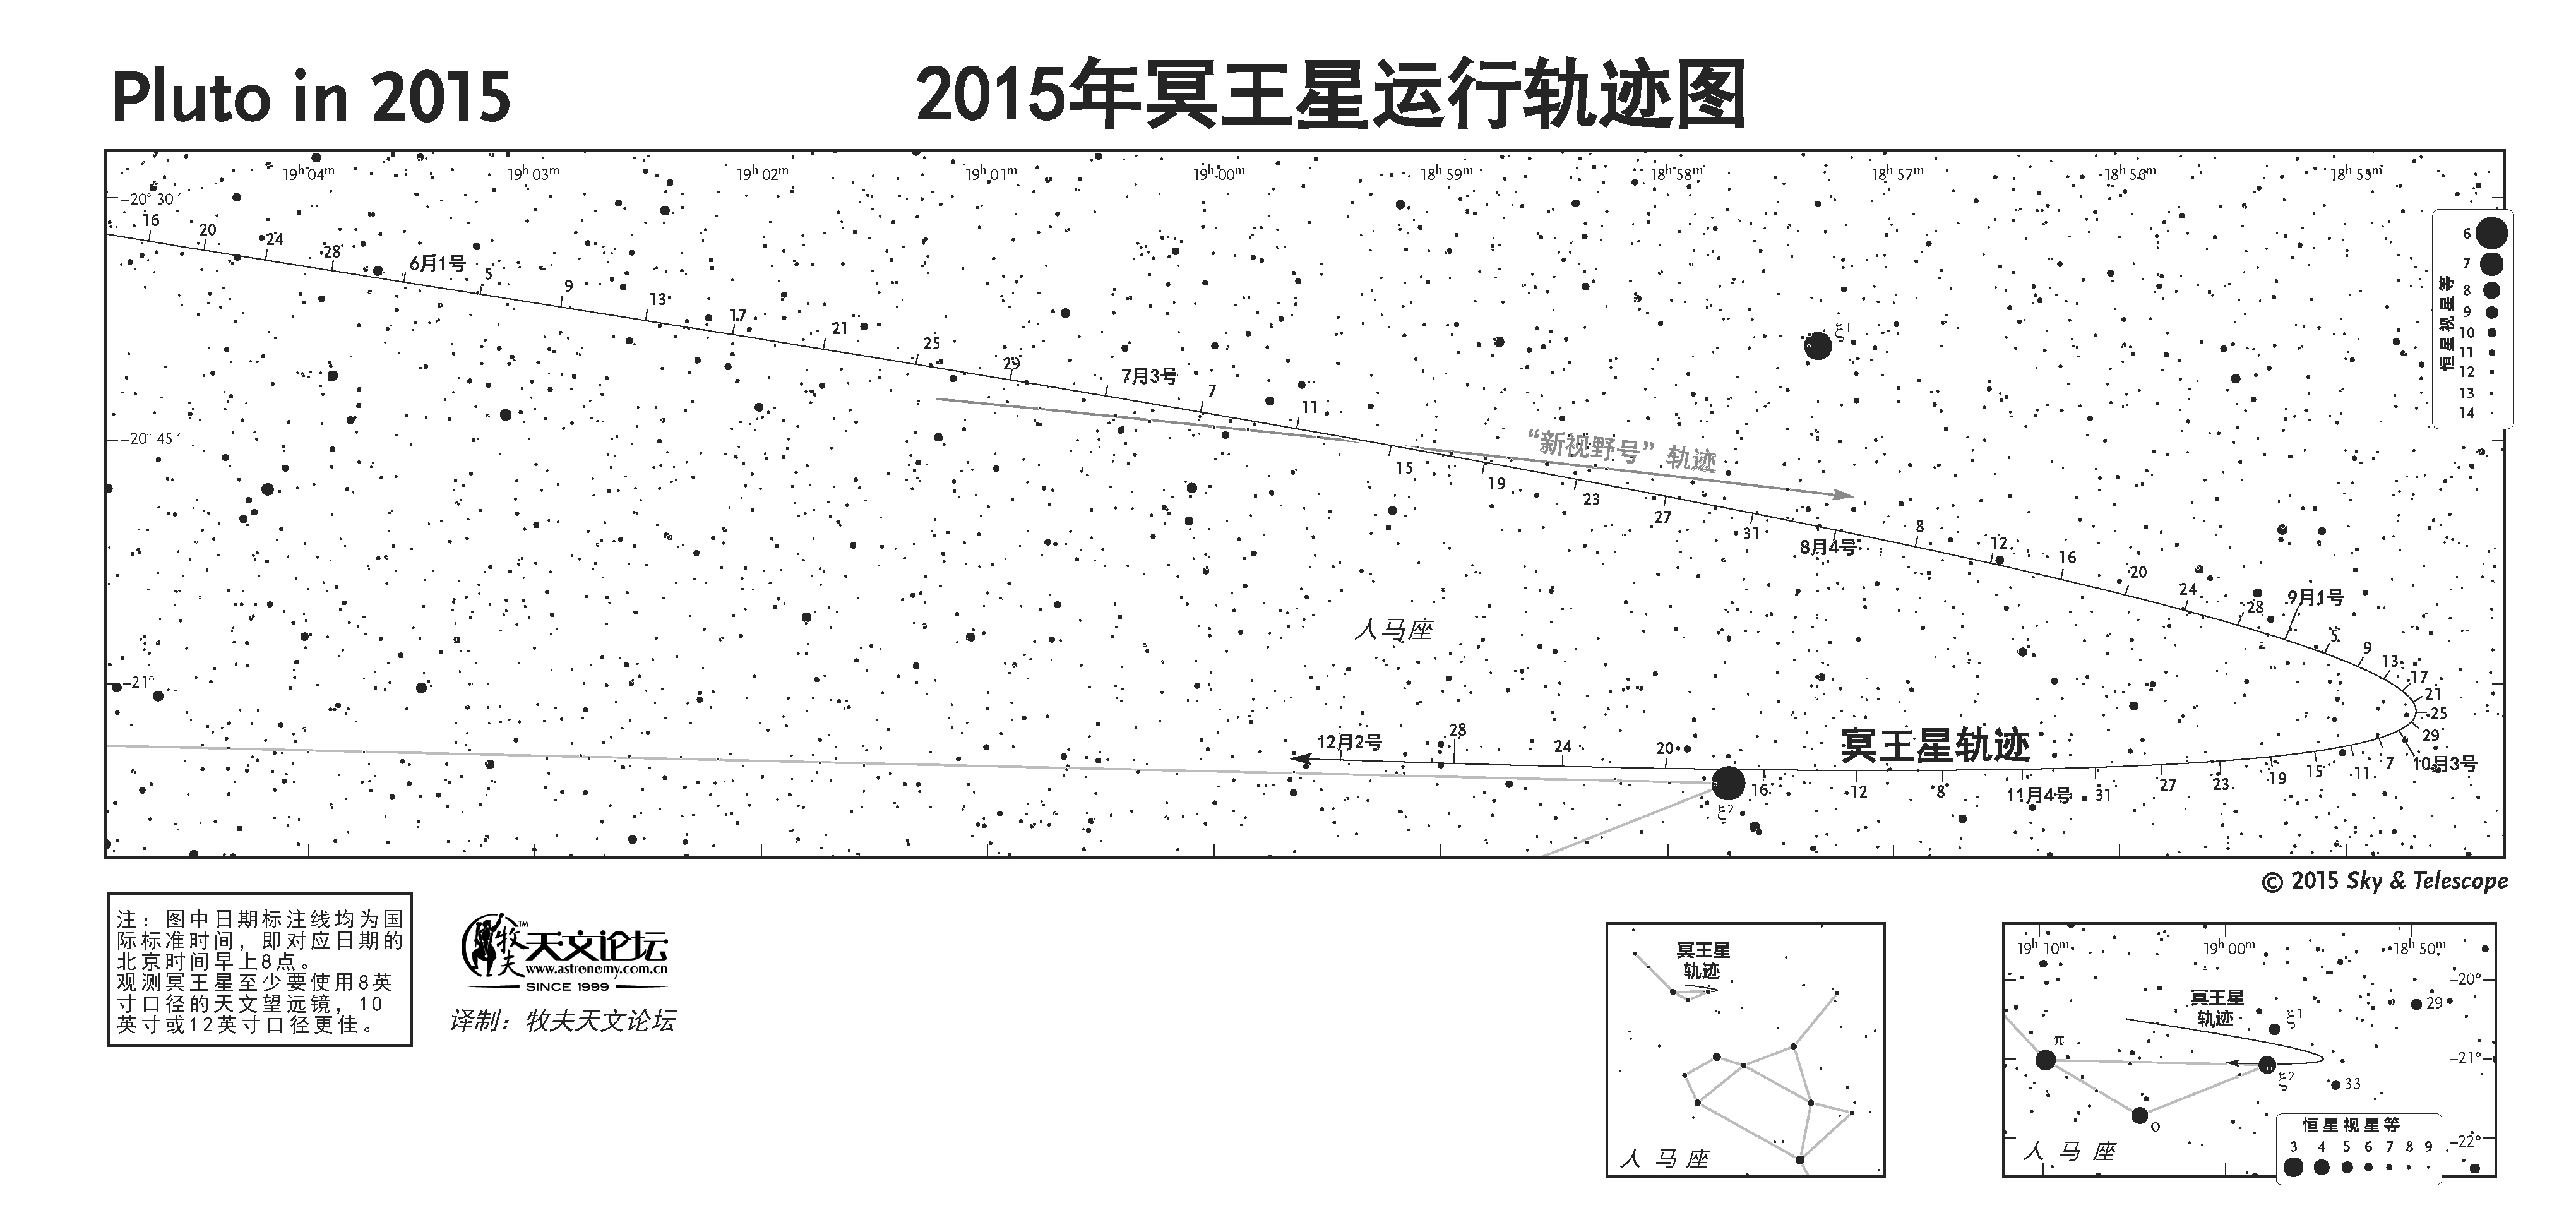 【牧夫收录】WEB_2015_Pluto.jpg